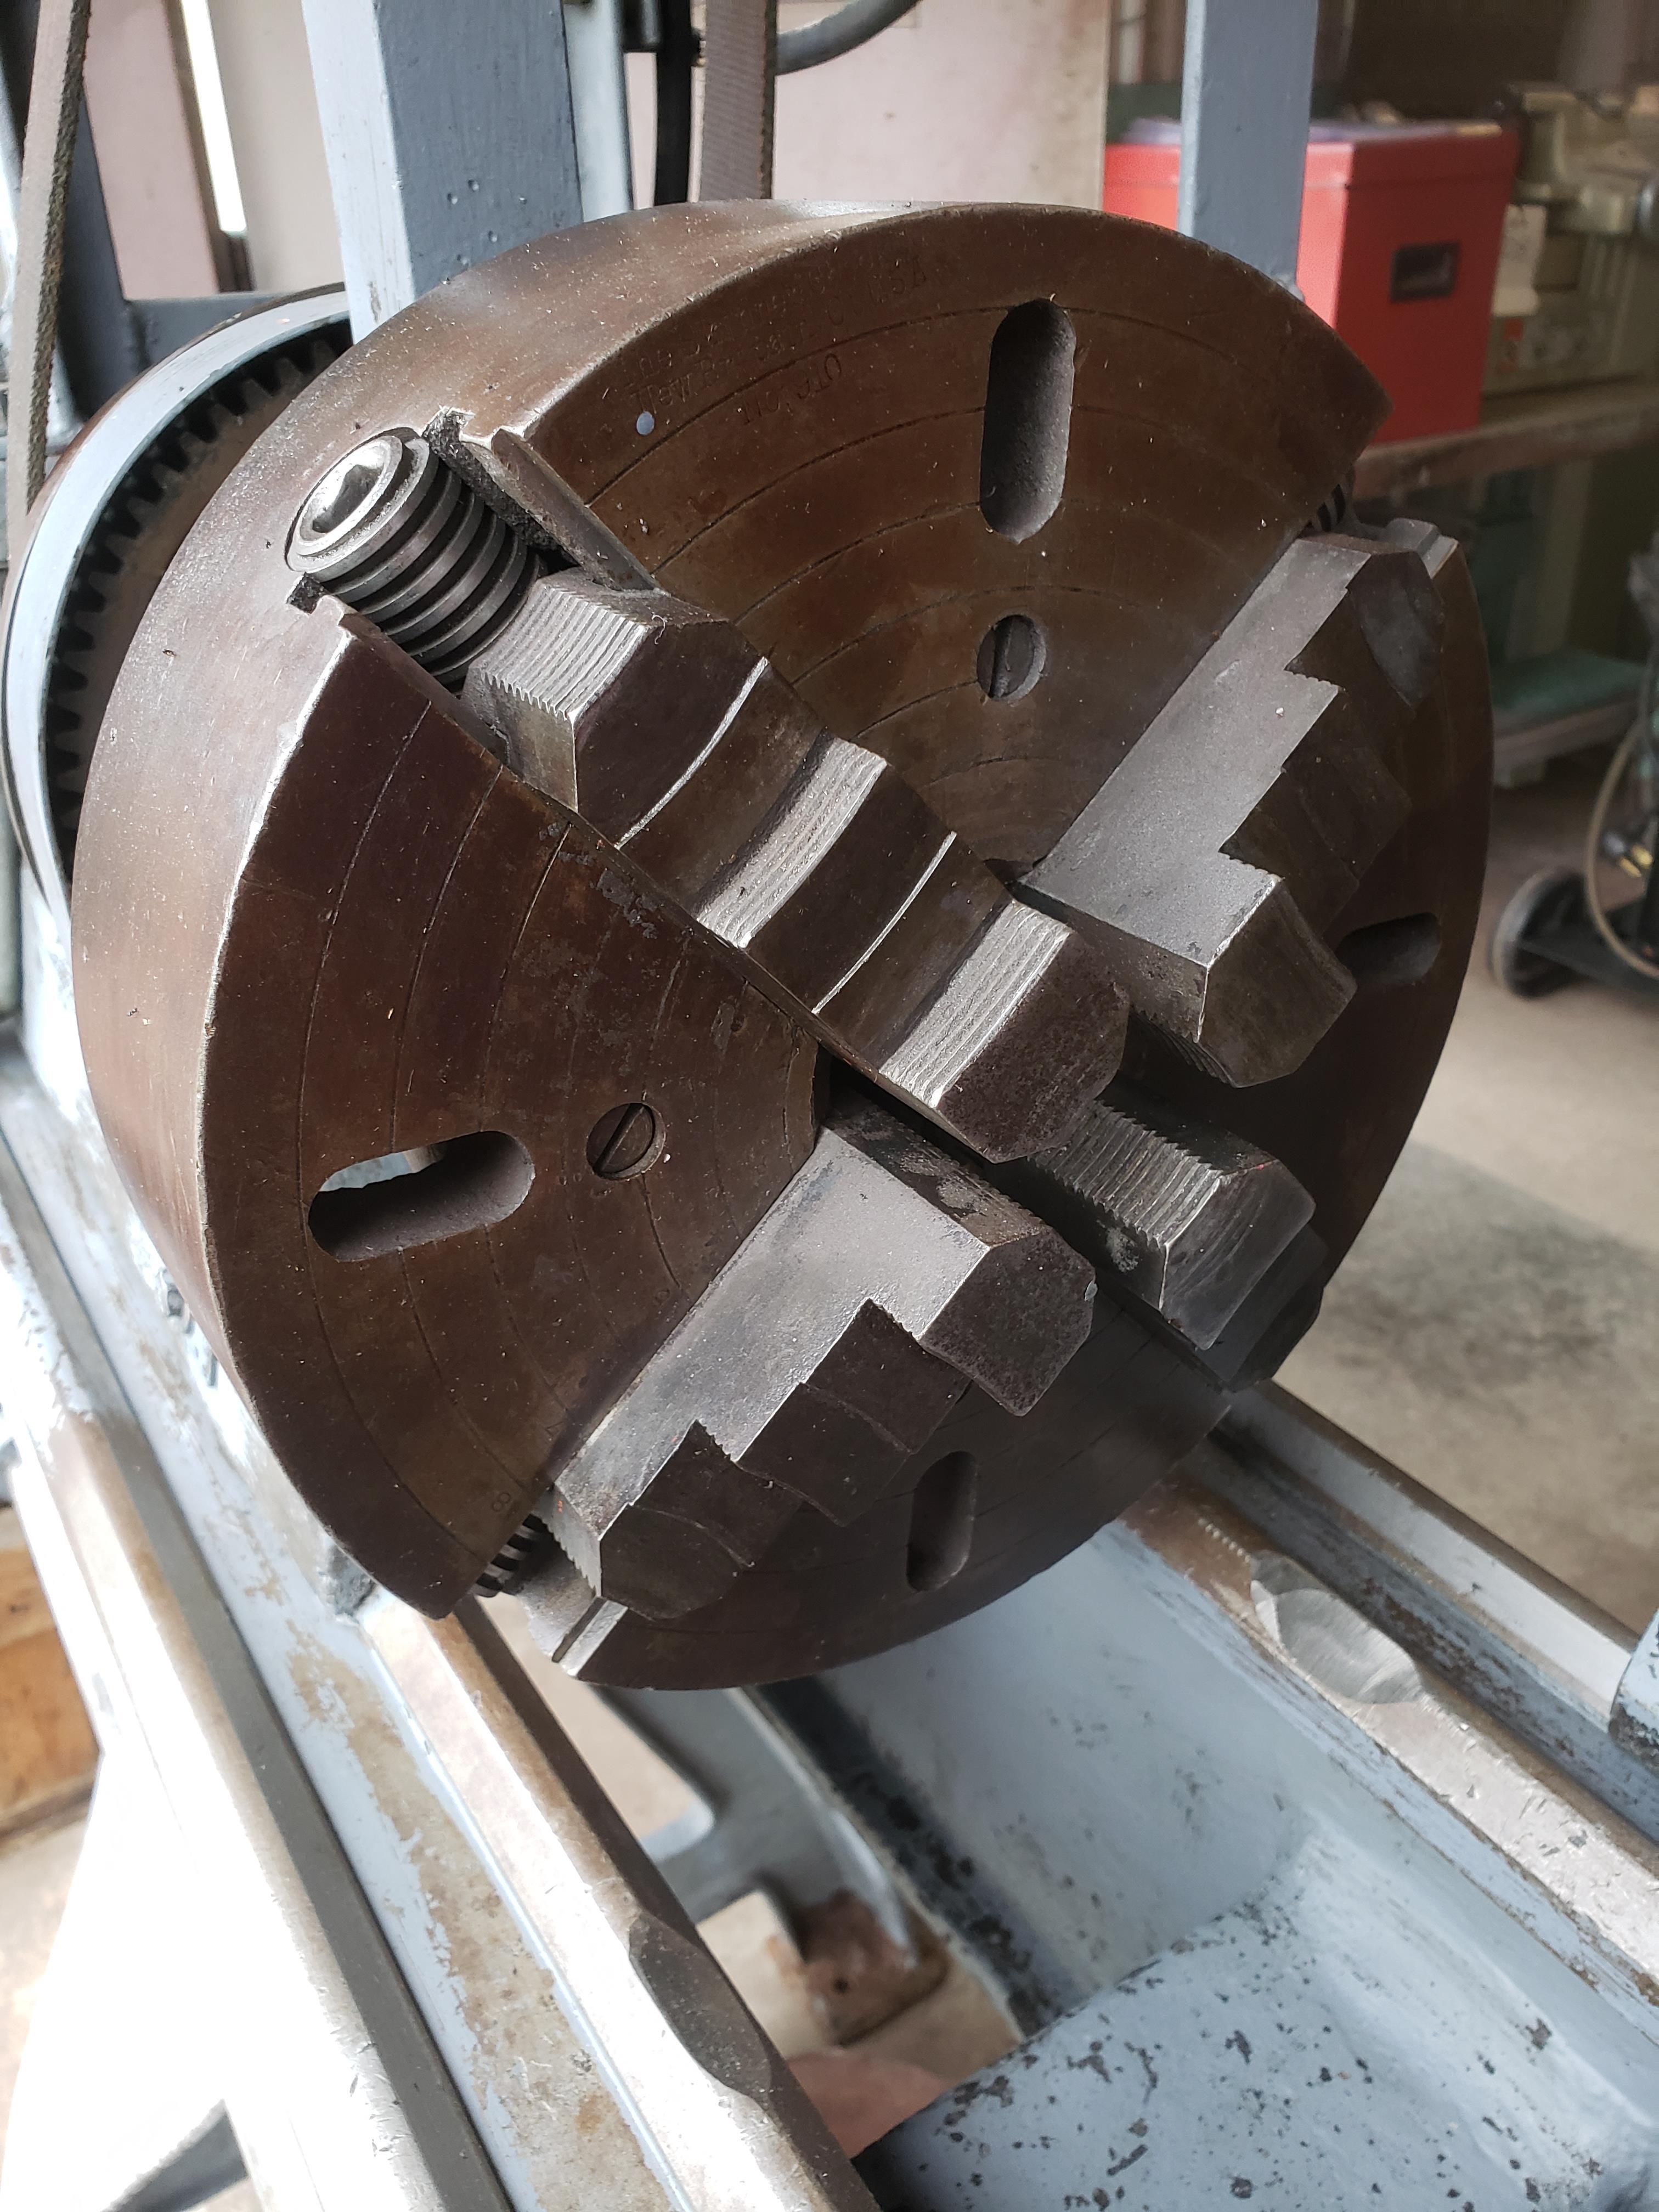 14" x 40" lathe used for polishing crankshafts